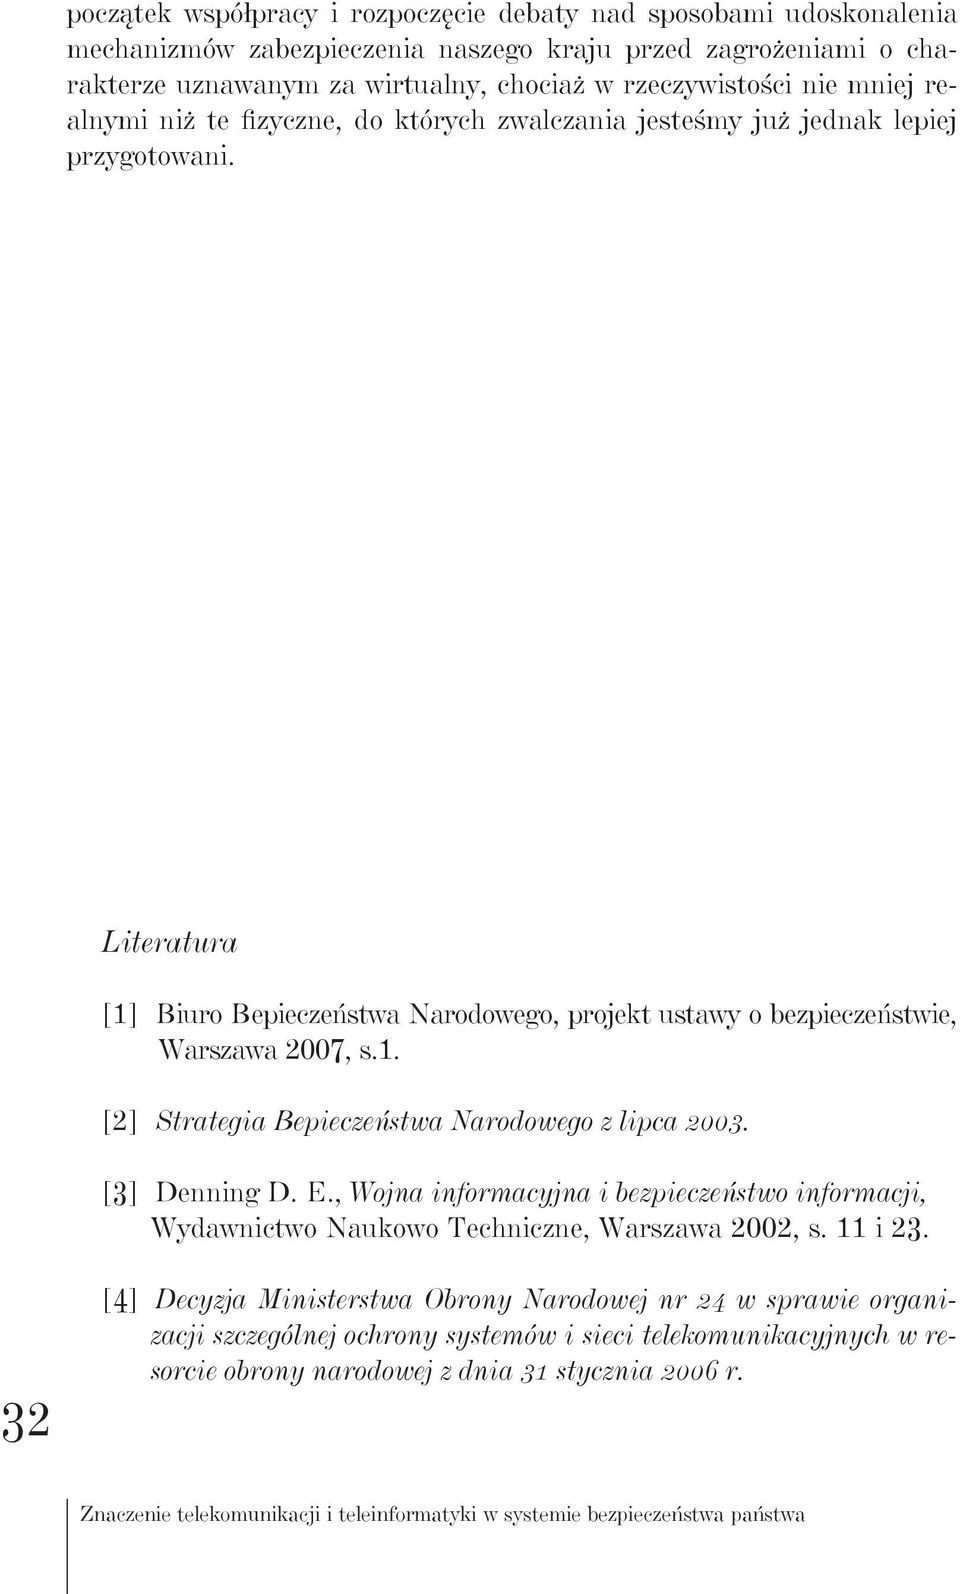 [3] Denning D. E., Wojna informacyjna i bezpieczeństwo informacji, Wydawnictwo Naukowo Techniczne, Warszawa 2002, s. 11 i 23.